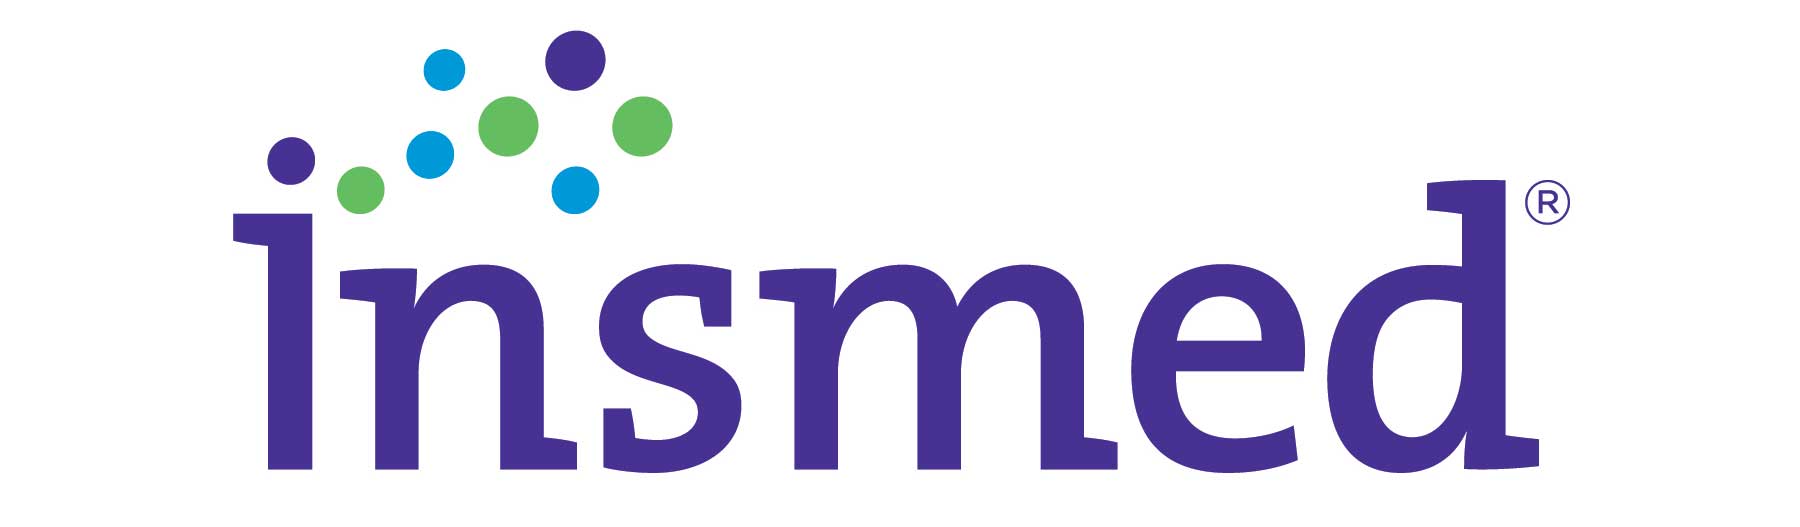 Insmed logo